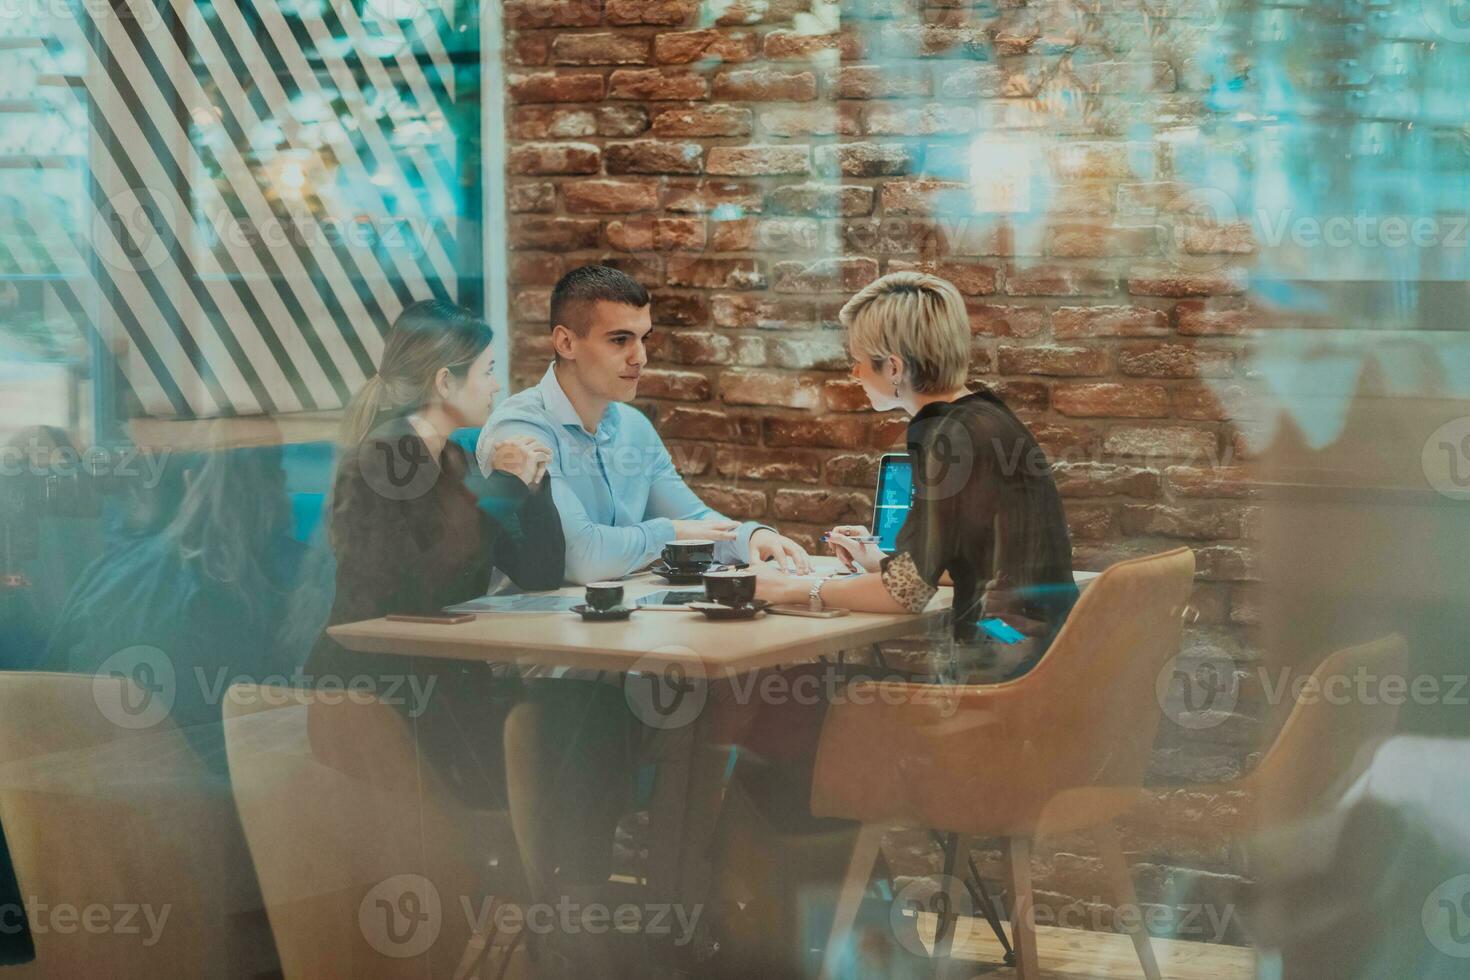 content hommes d'affaires souriant gaiement pendant une réunion dans une café magasin. groupe de réussi affaires professionnels travail comme une équipe dans une multiculturel lieu de travail. photo